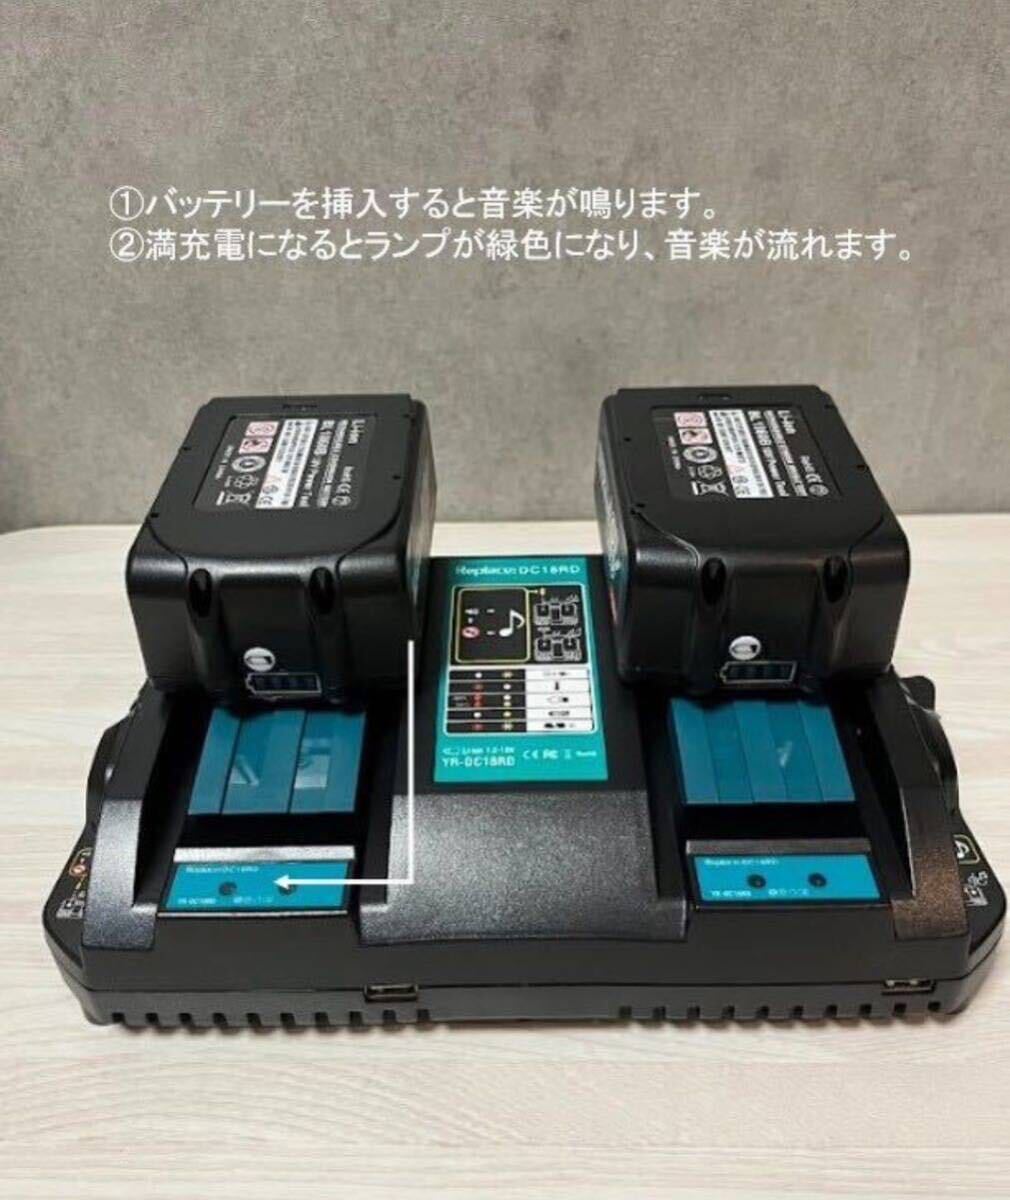 [ бесплатная доставка ][ новый товар последняя модель ]NO.1 Makita MAX 18v6.0Ah сменный аккумулятор BL1860B×2 шт 6.0Ah BL1860 2. зарядное устройство (DC18RD YX-DC18RD) комплект 